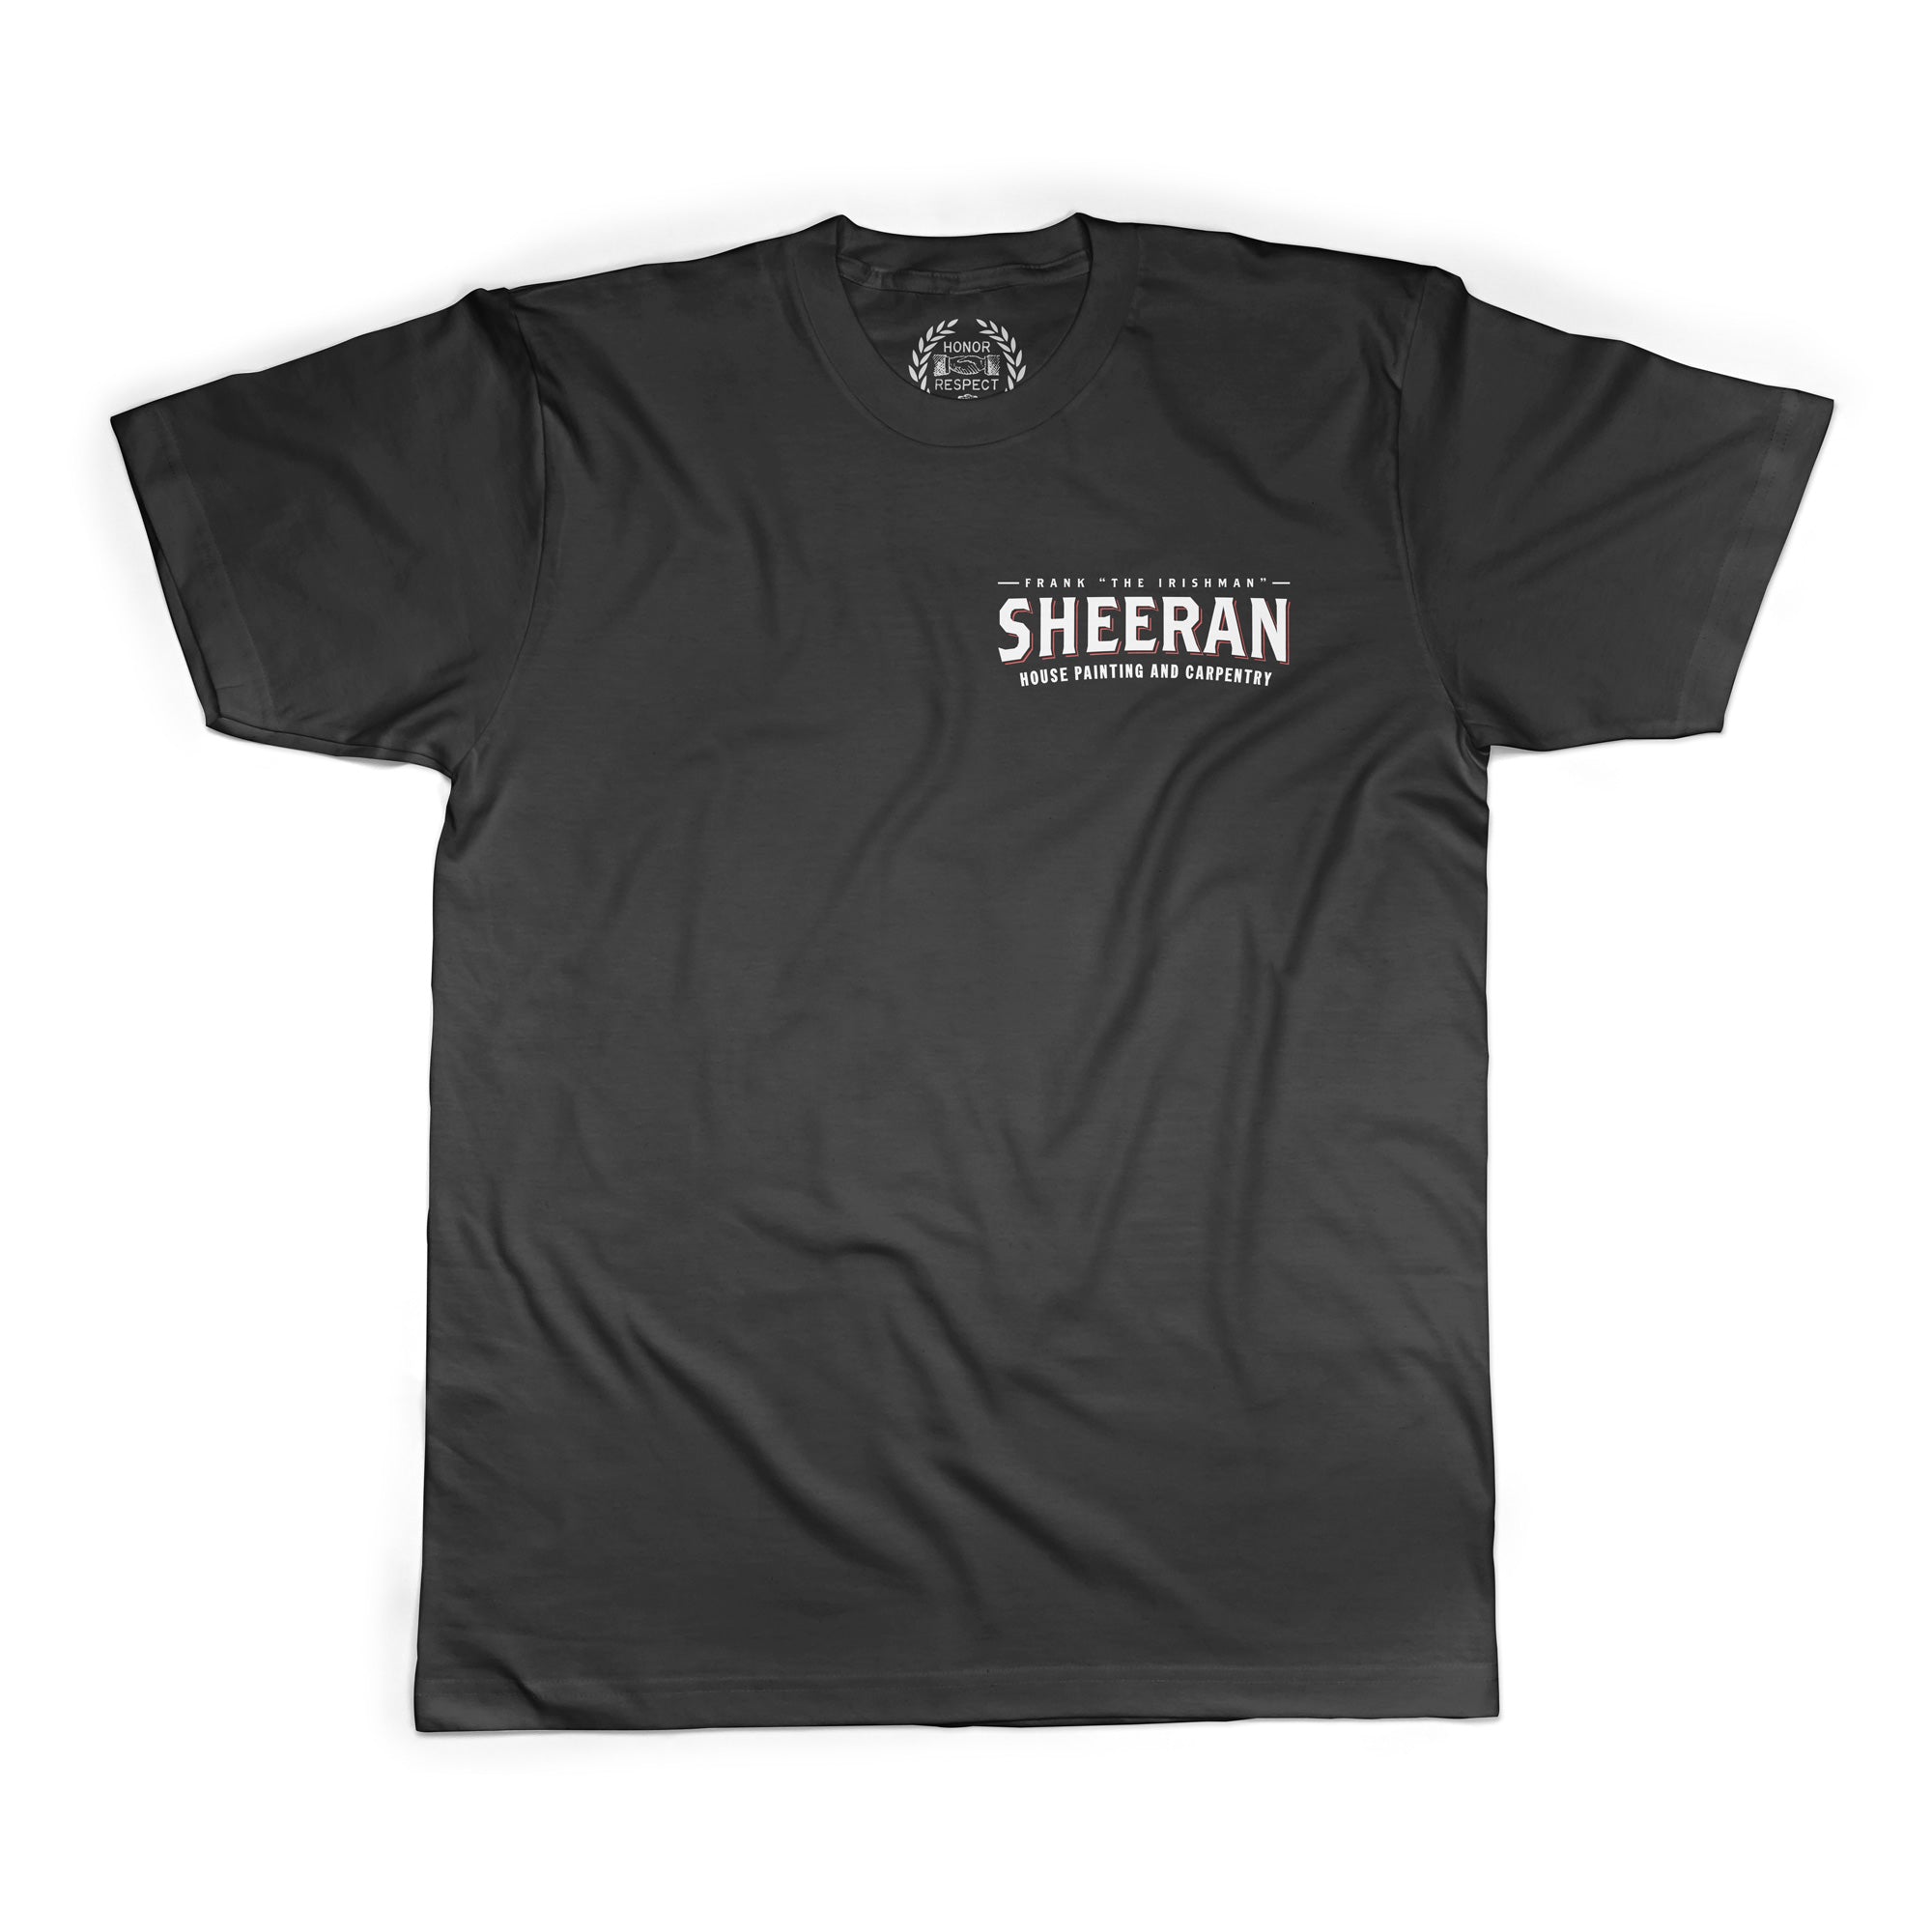 Sheeran Construction Shirt